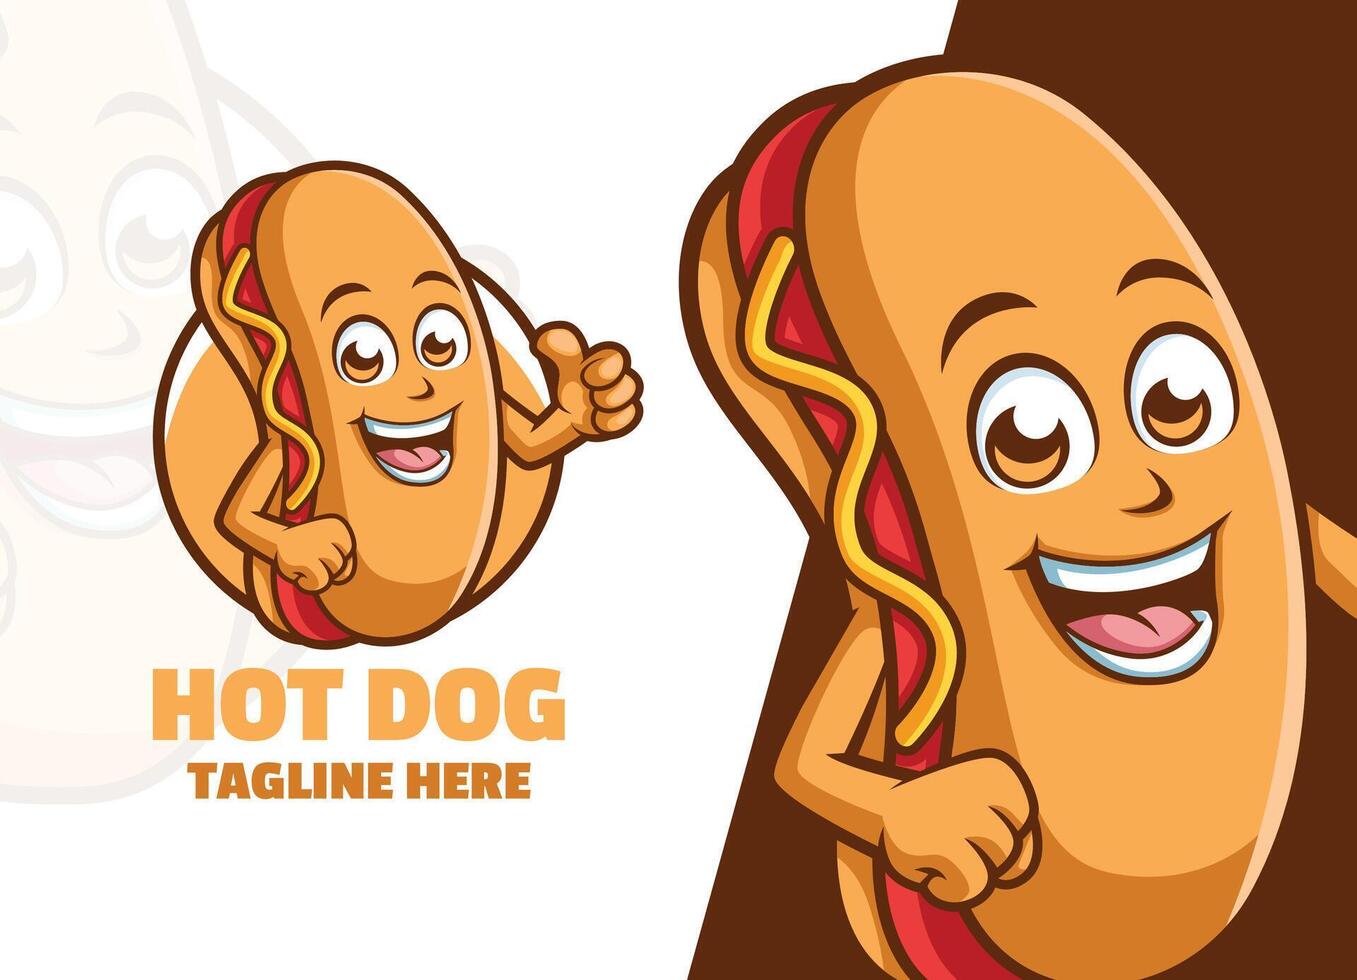 Cute Hot Dog Cartoon character mascot logo Giving Thumb up vector illustration